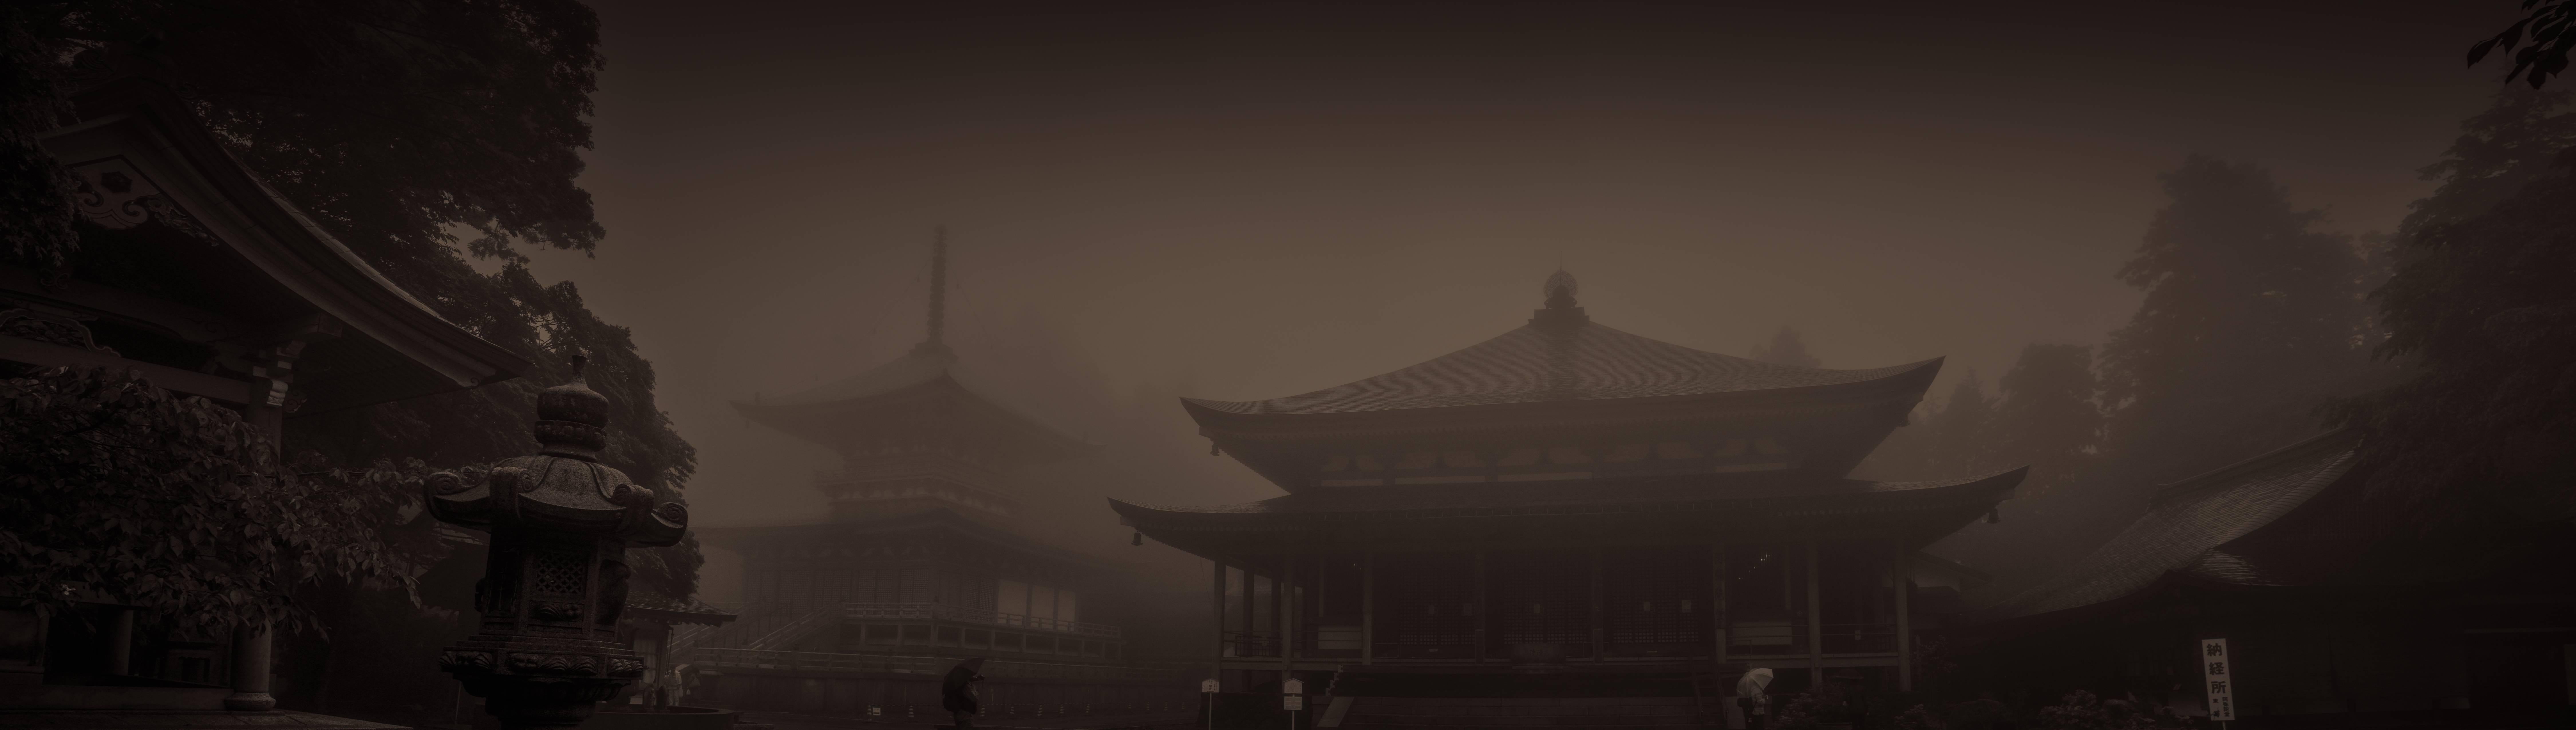 Kelley Van Dilla Black and White Photograph - Enryaku-ji Temples